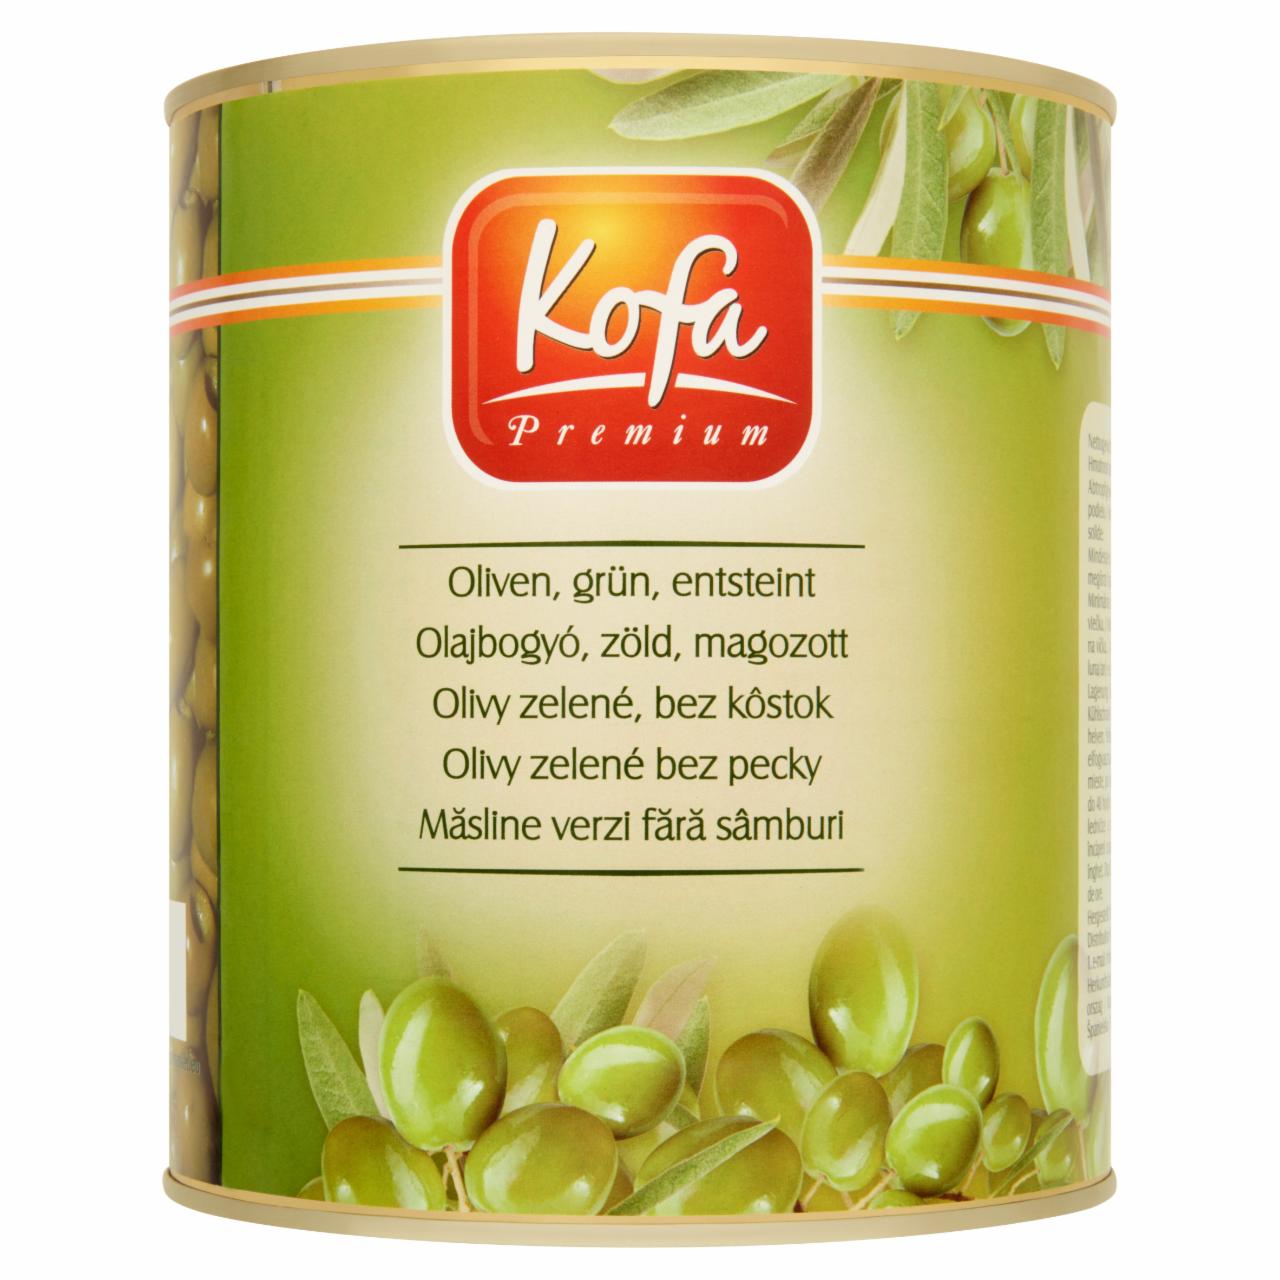 Képek - Kofa Premium magozott zöld olajbogyó 3000 g